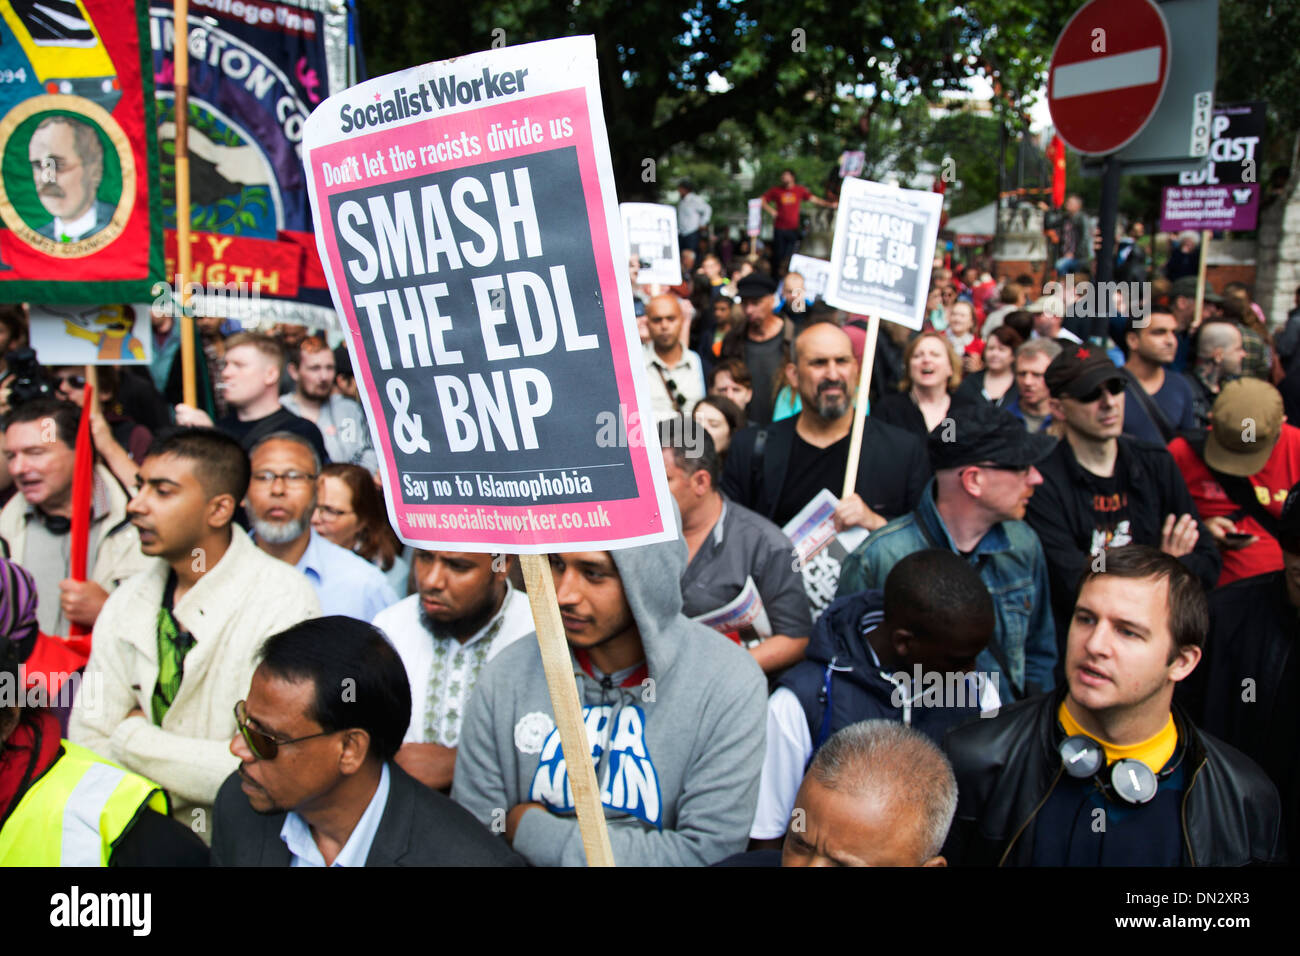 Unire le forze contro il fascismo manifestazione contro l'EDL su Whitechapel nella zona est di Londra. Foto Stock